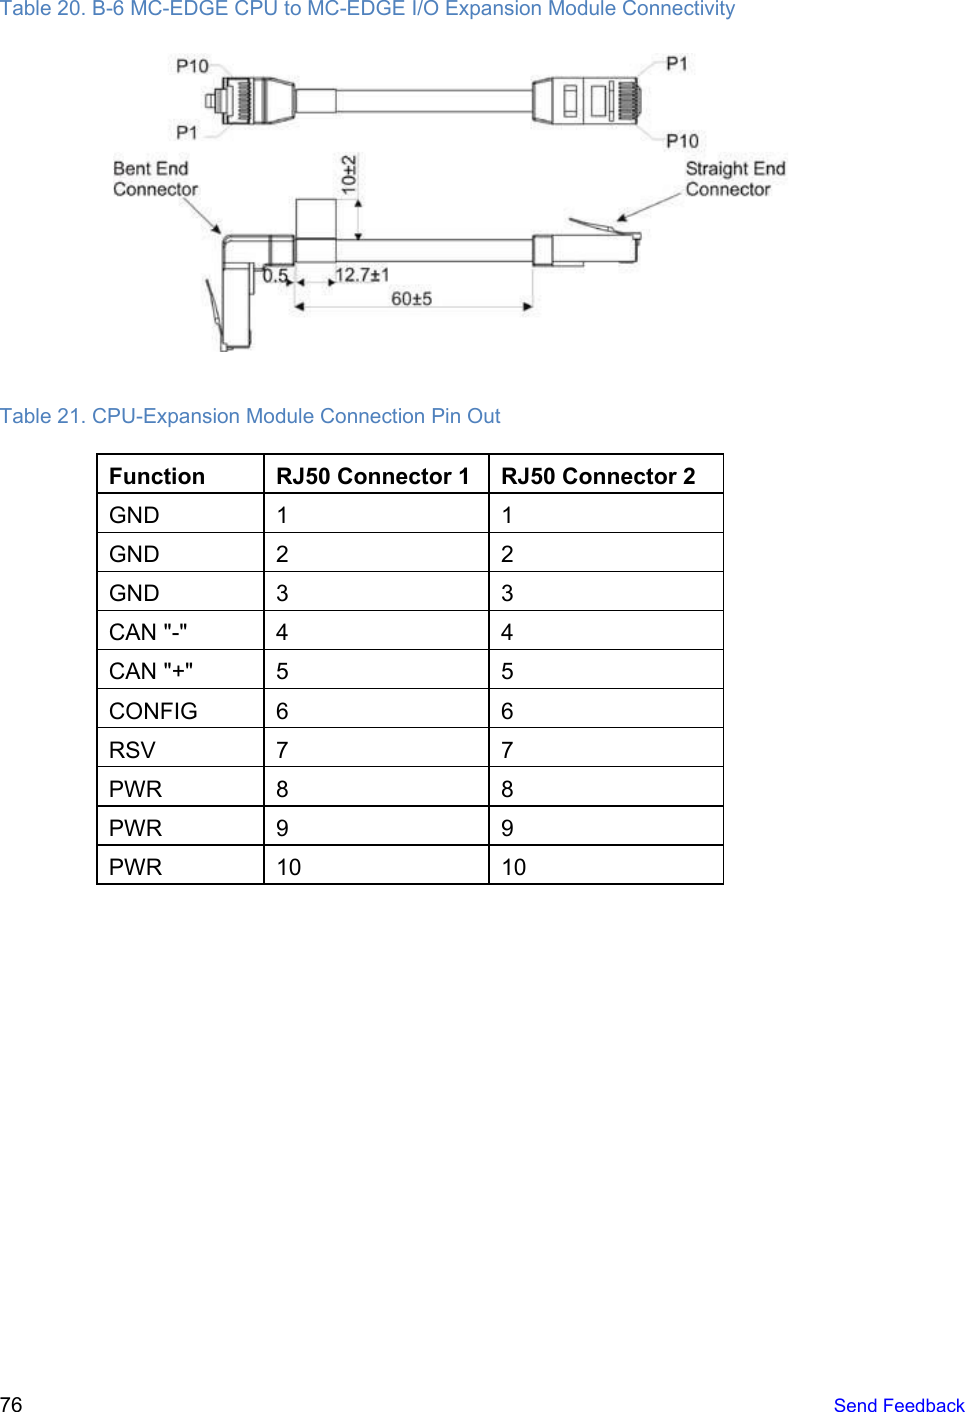 Table 20. B-6 MC-EDGE CPU to MC-EDGE I/O Expansion Module Connectivity  Table 21. CPU-Expansion Module Connection Pin Out Function RJ50 Connector 1 RJ50 Connector 2 GND 1 1 GND 2 2 GND 3 3 CAN &quot;-&quot; 4 4 CAN &quot;+&quot; 5 5 CONFIG 6 6 RSV 7 7 PWR 8 8 PWR 9 9 PWR 10 10      76   Send Feedback  